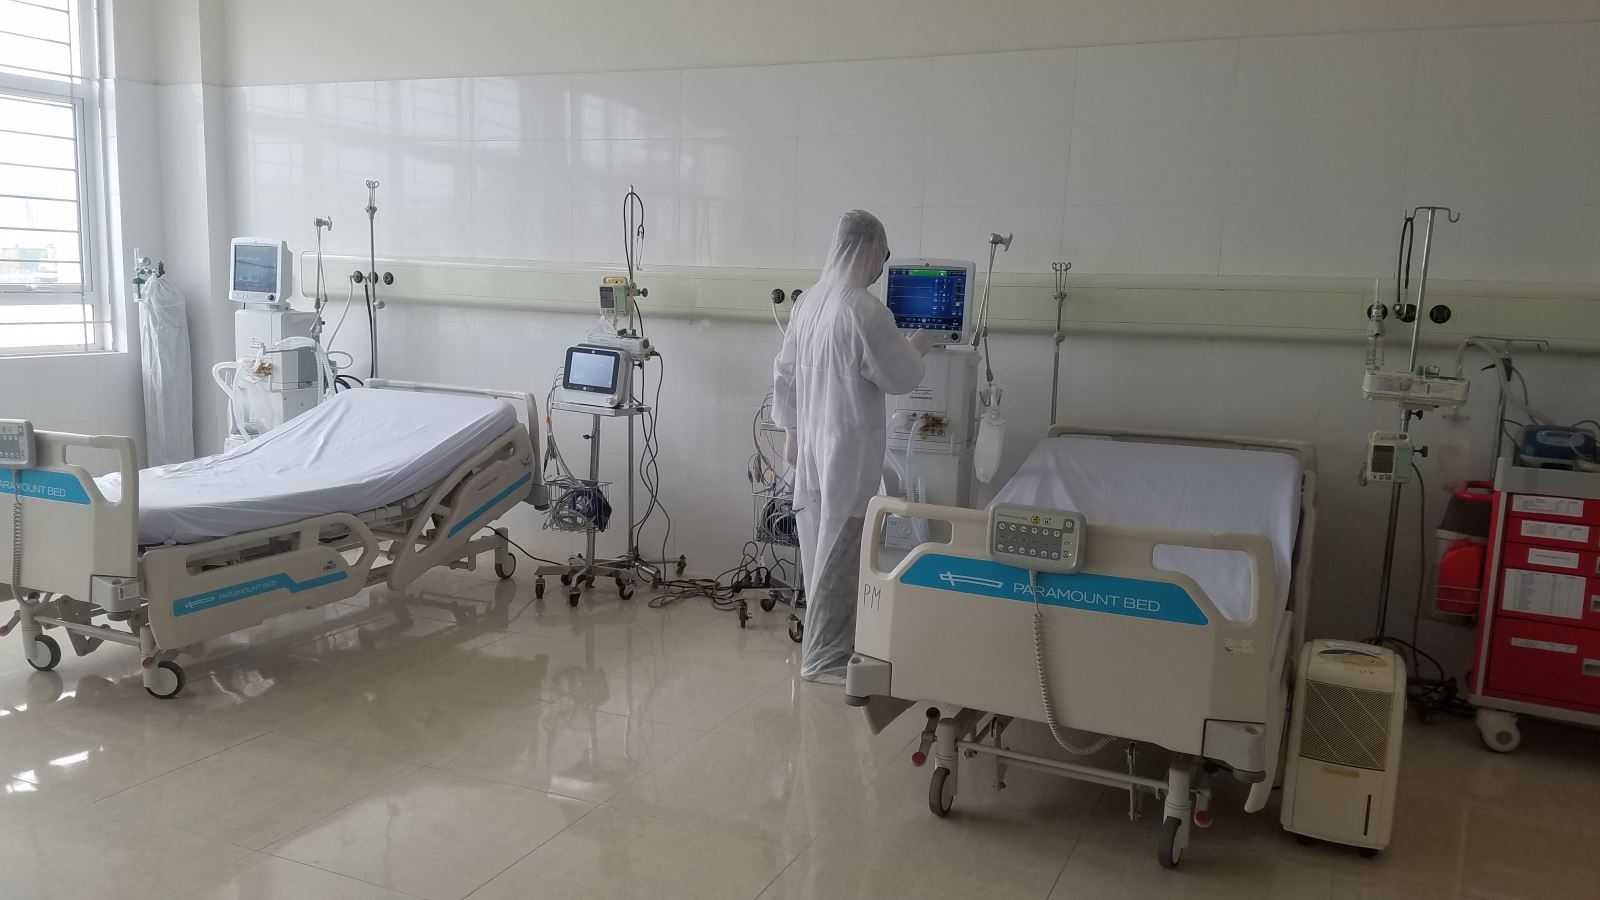 Trang thiết bị hiện đại được lắp đặt và đi vào hoạt động trong thời gian ngắn phục vụ Bệnh viện dã chiến tại Móng Cái. Ảnh: Nguồn CDC Quảng Ninh.